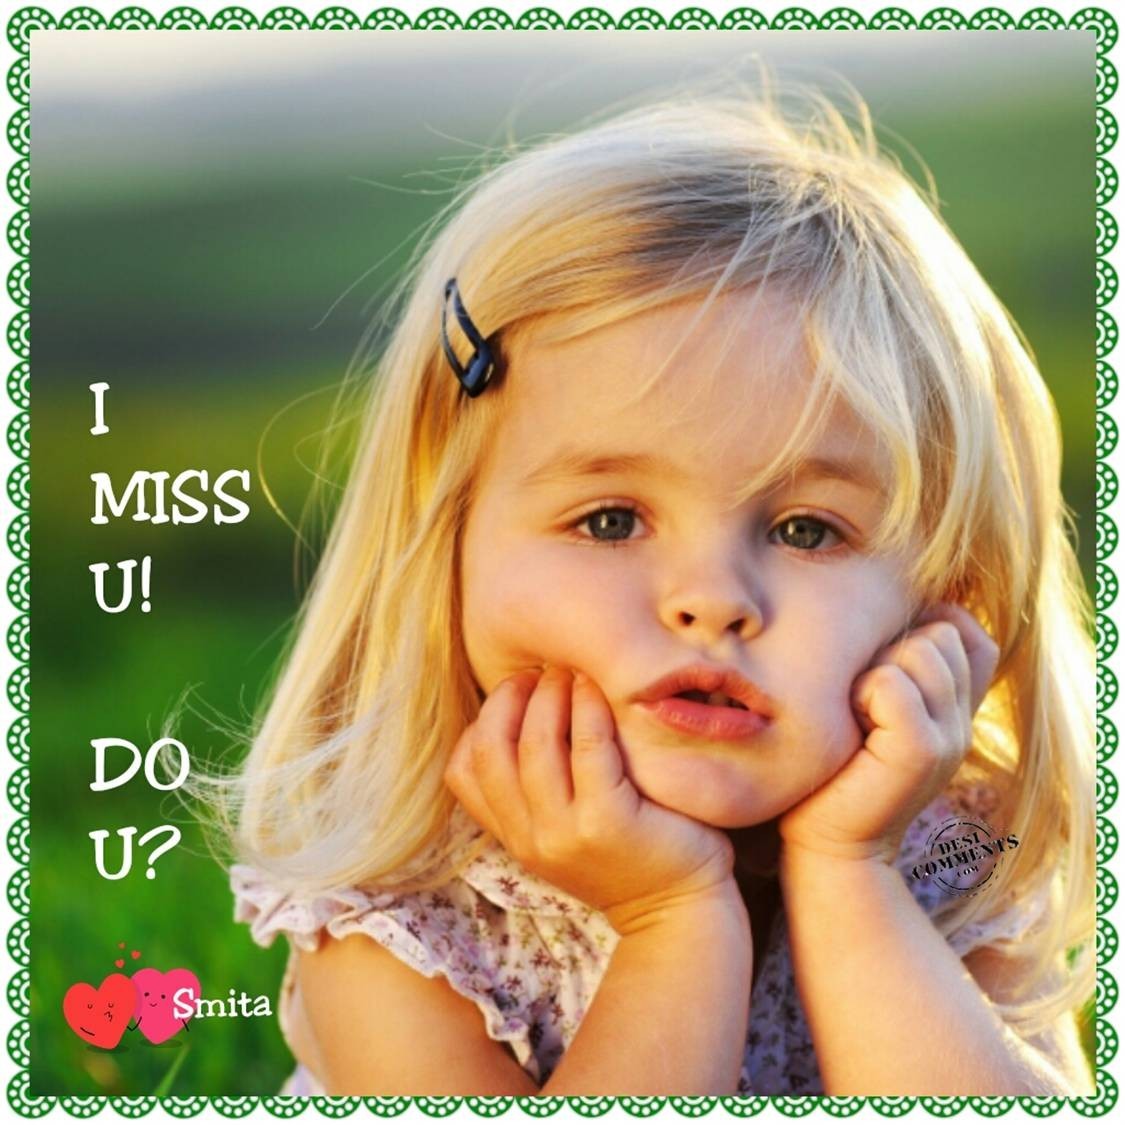 I Miss U! Do U? - DesiComments.com